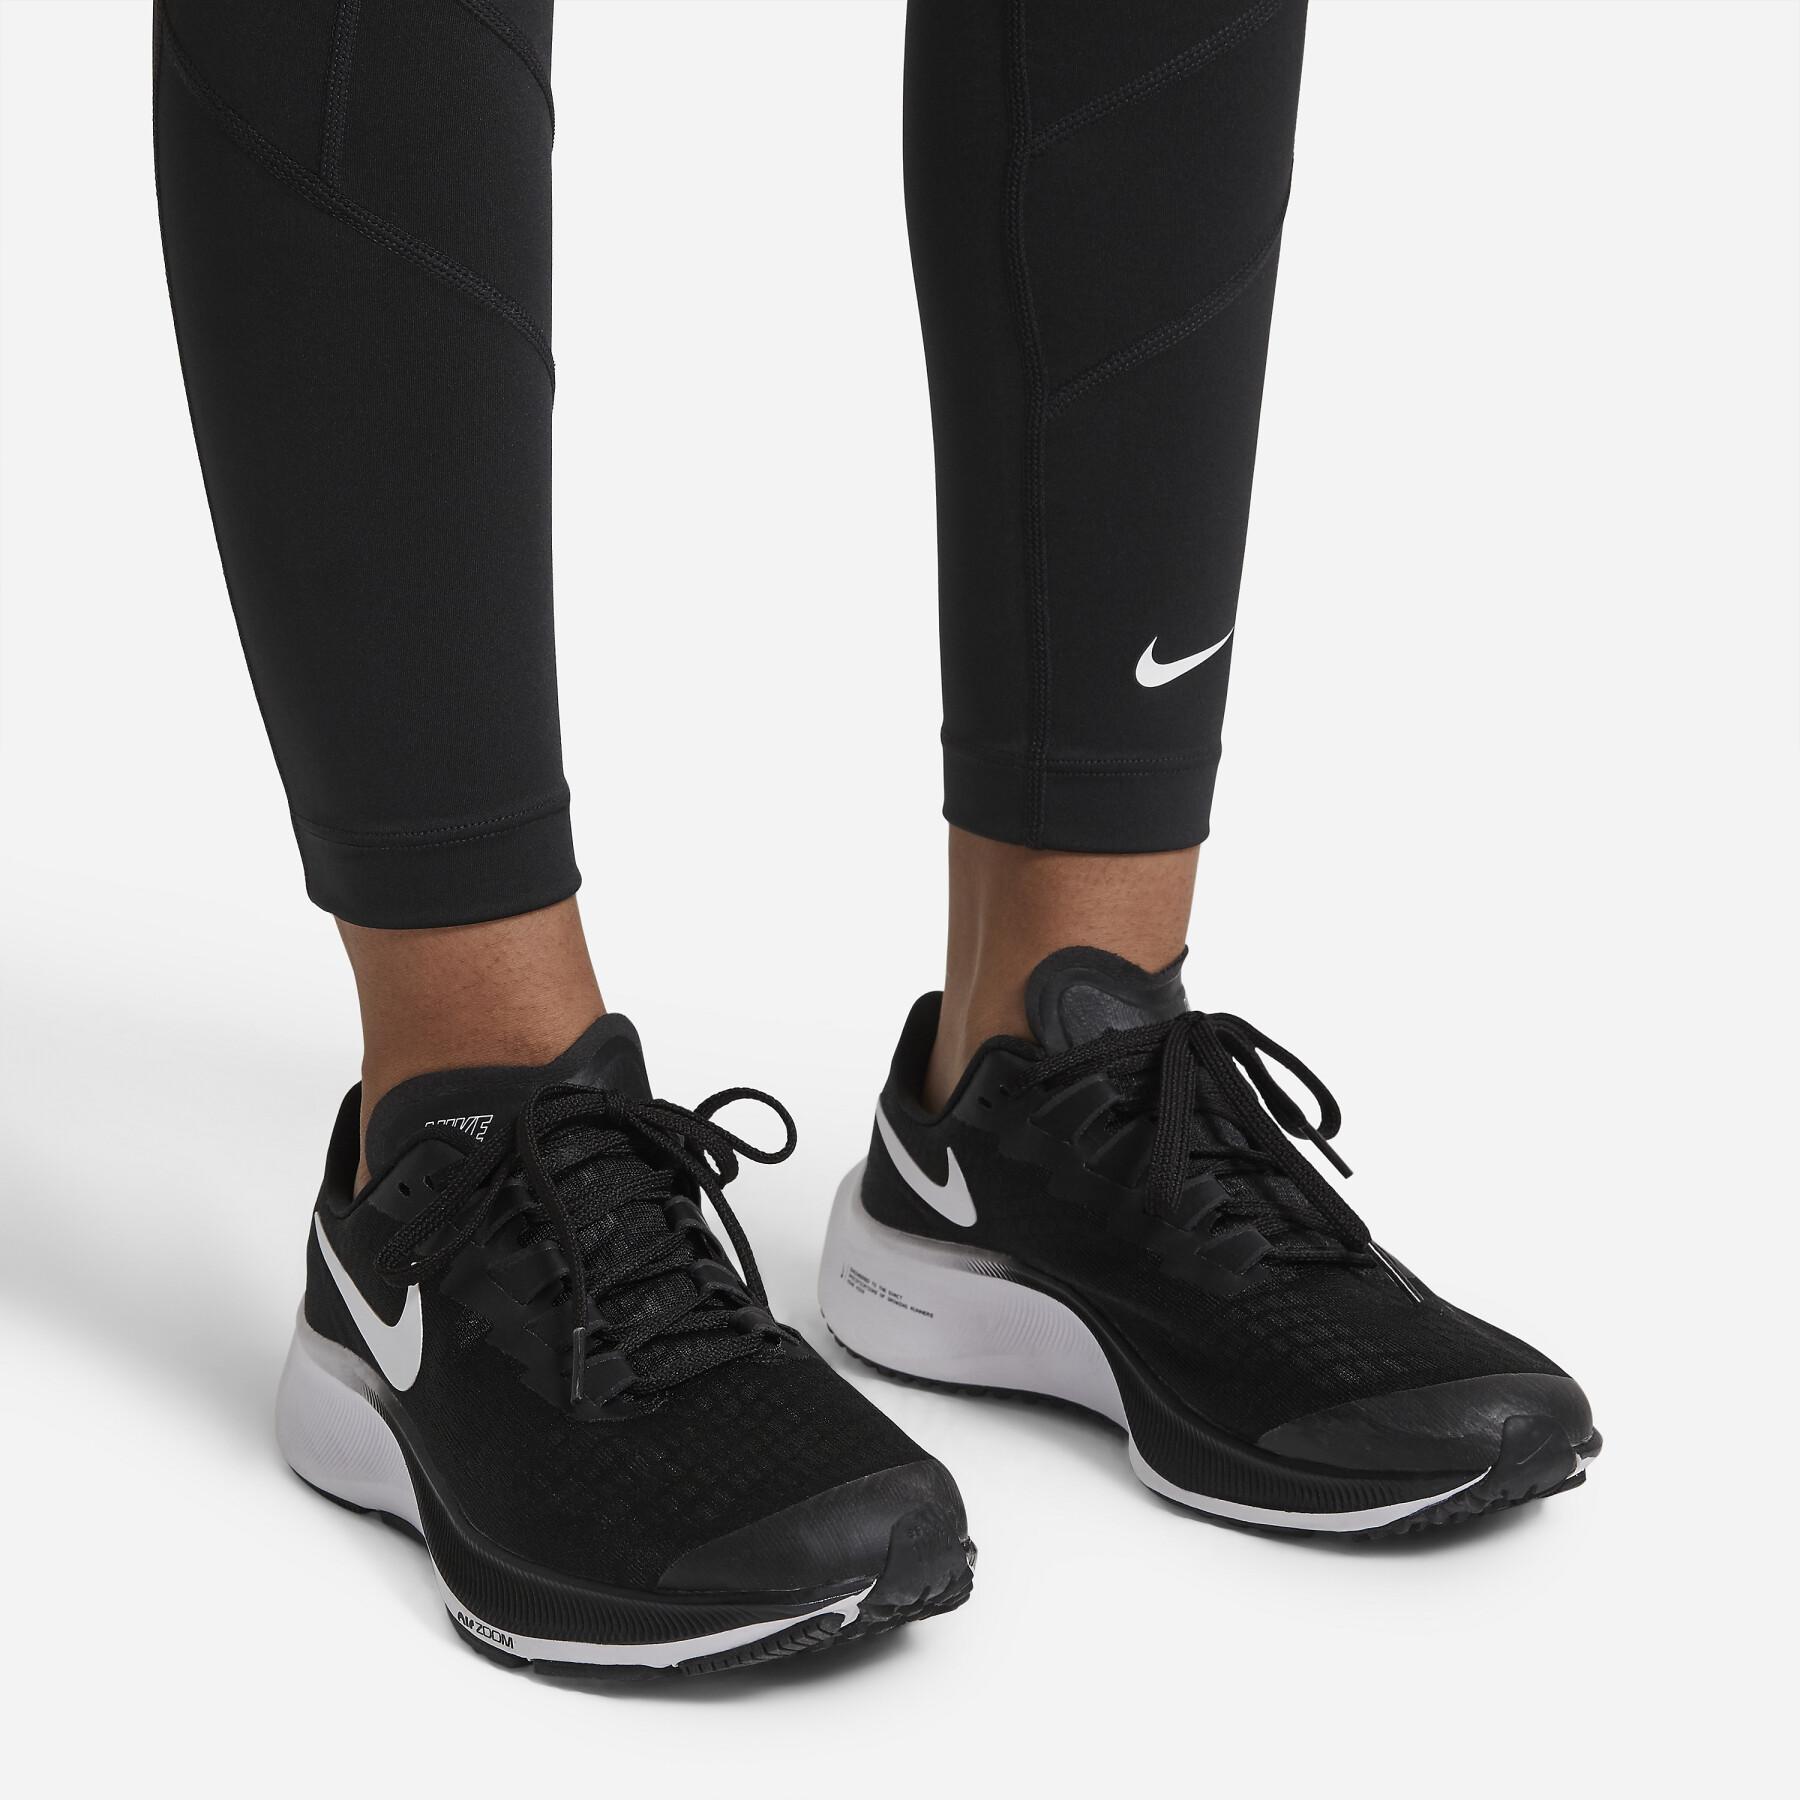 Meisjes legging Nike One